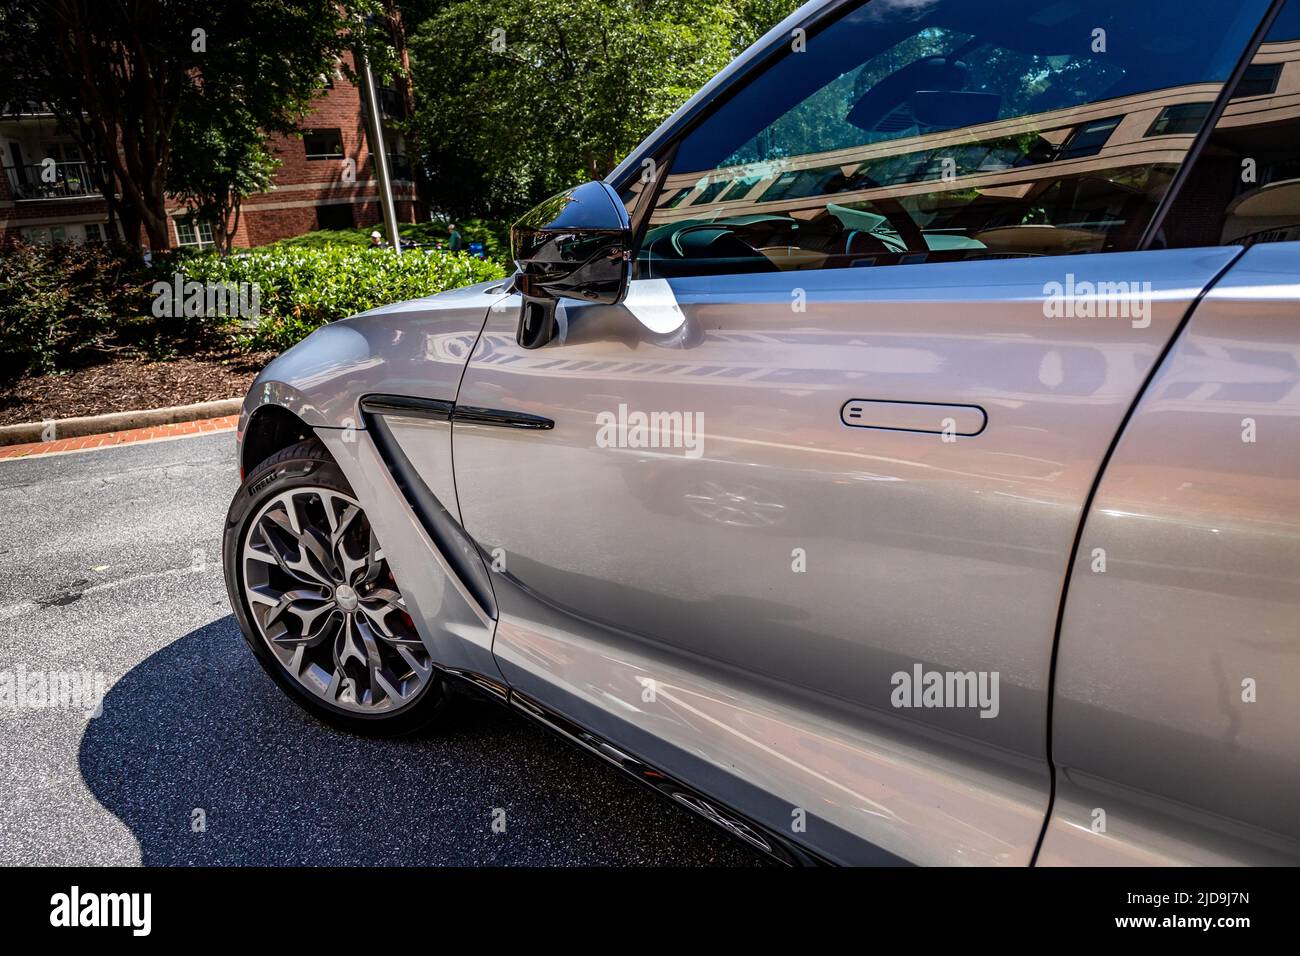 Aston Martin Stock Photo